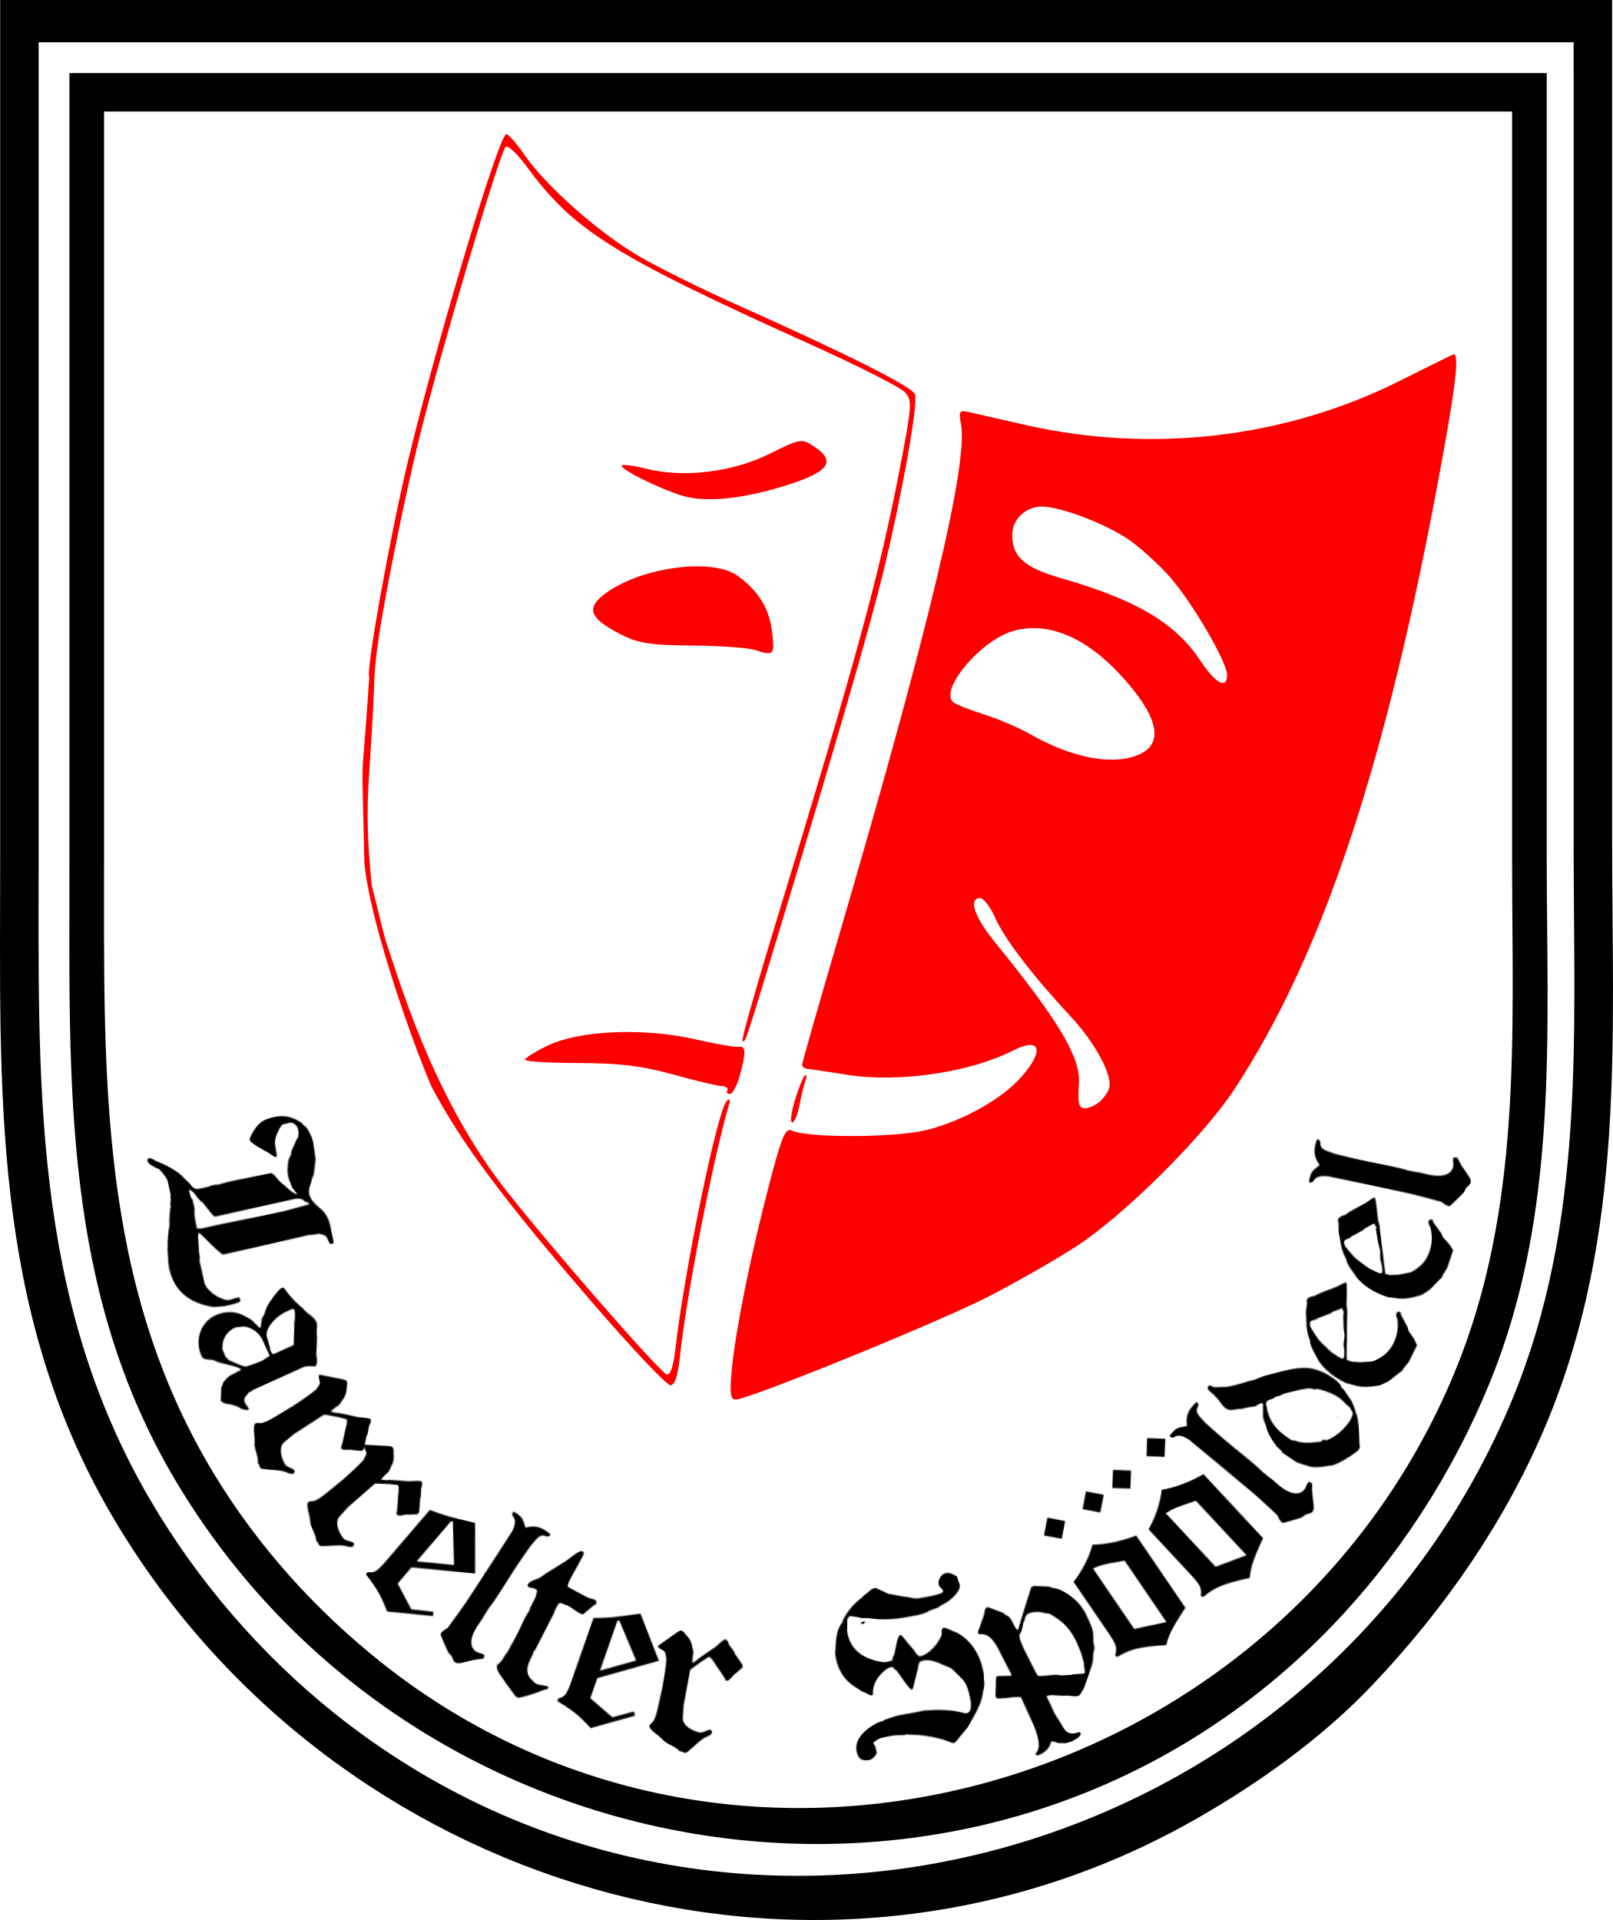 Logo Larrelter Spööldeel